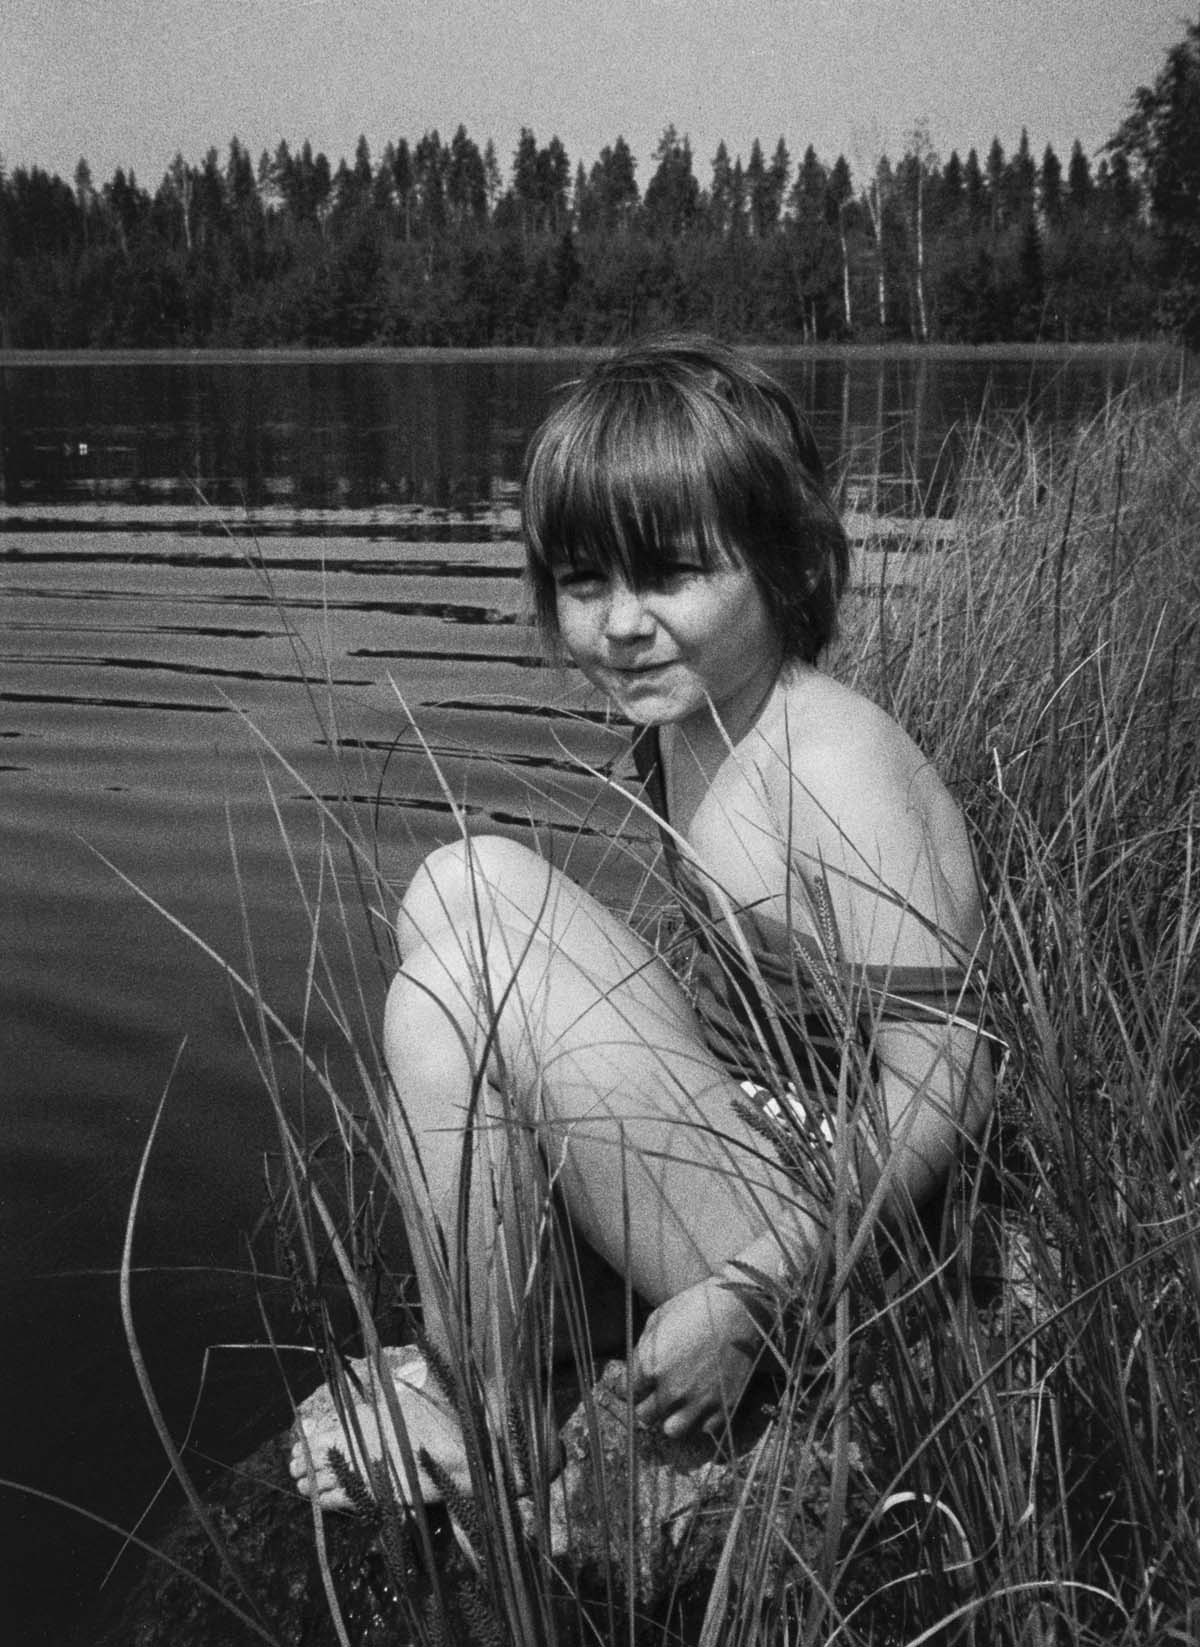 Cecilia at Lillsjön by Ann Lehndal Skansen